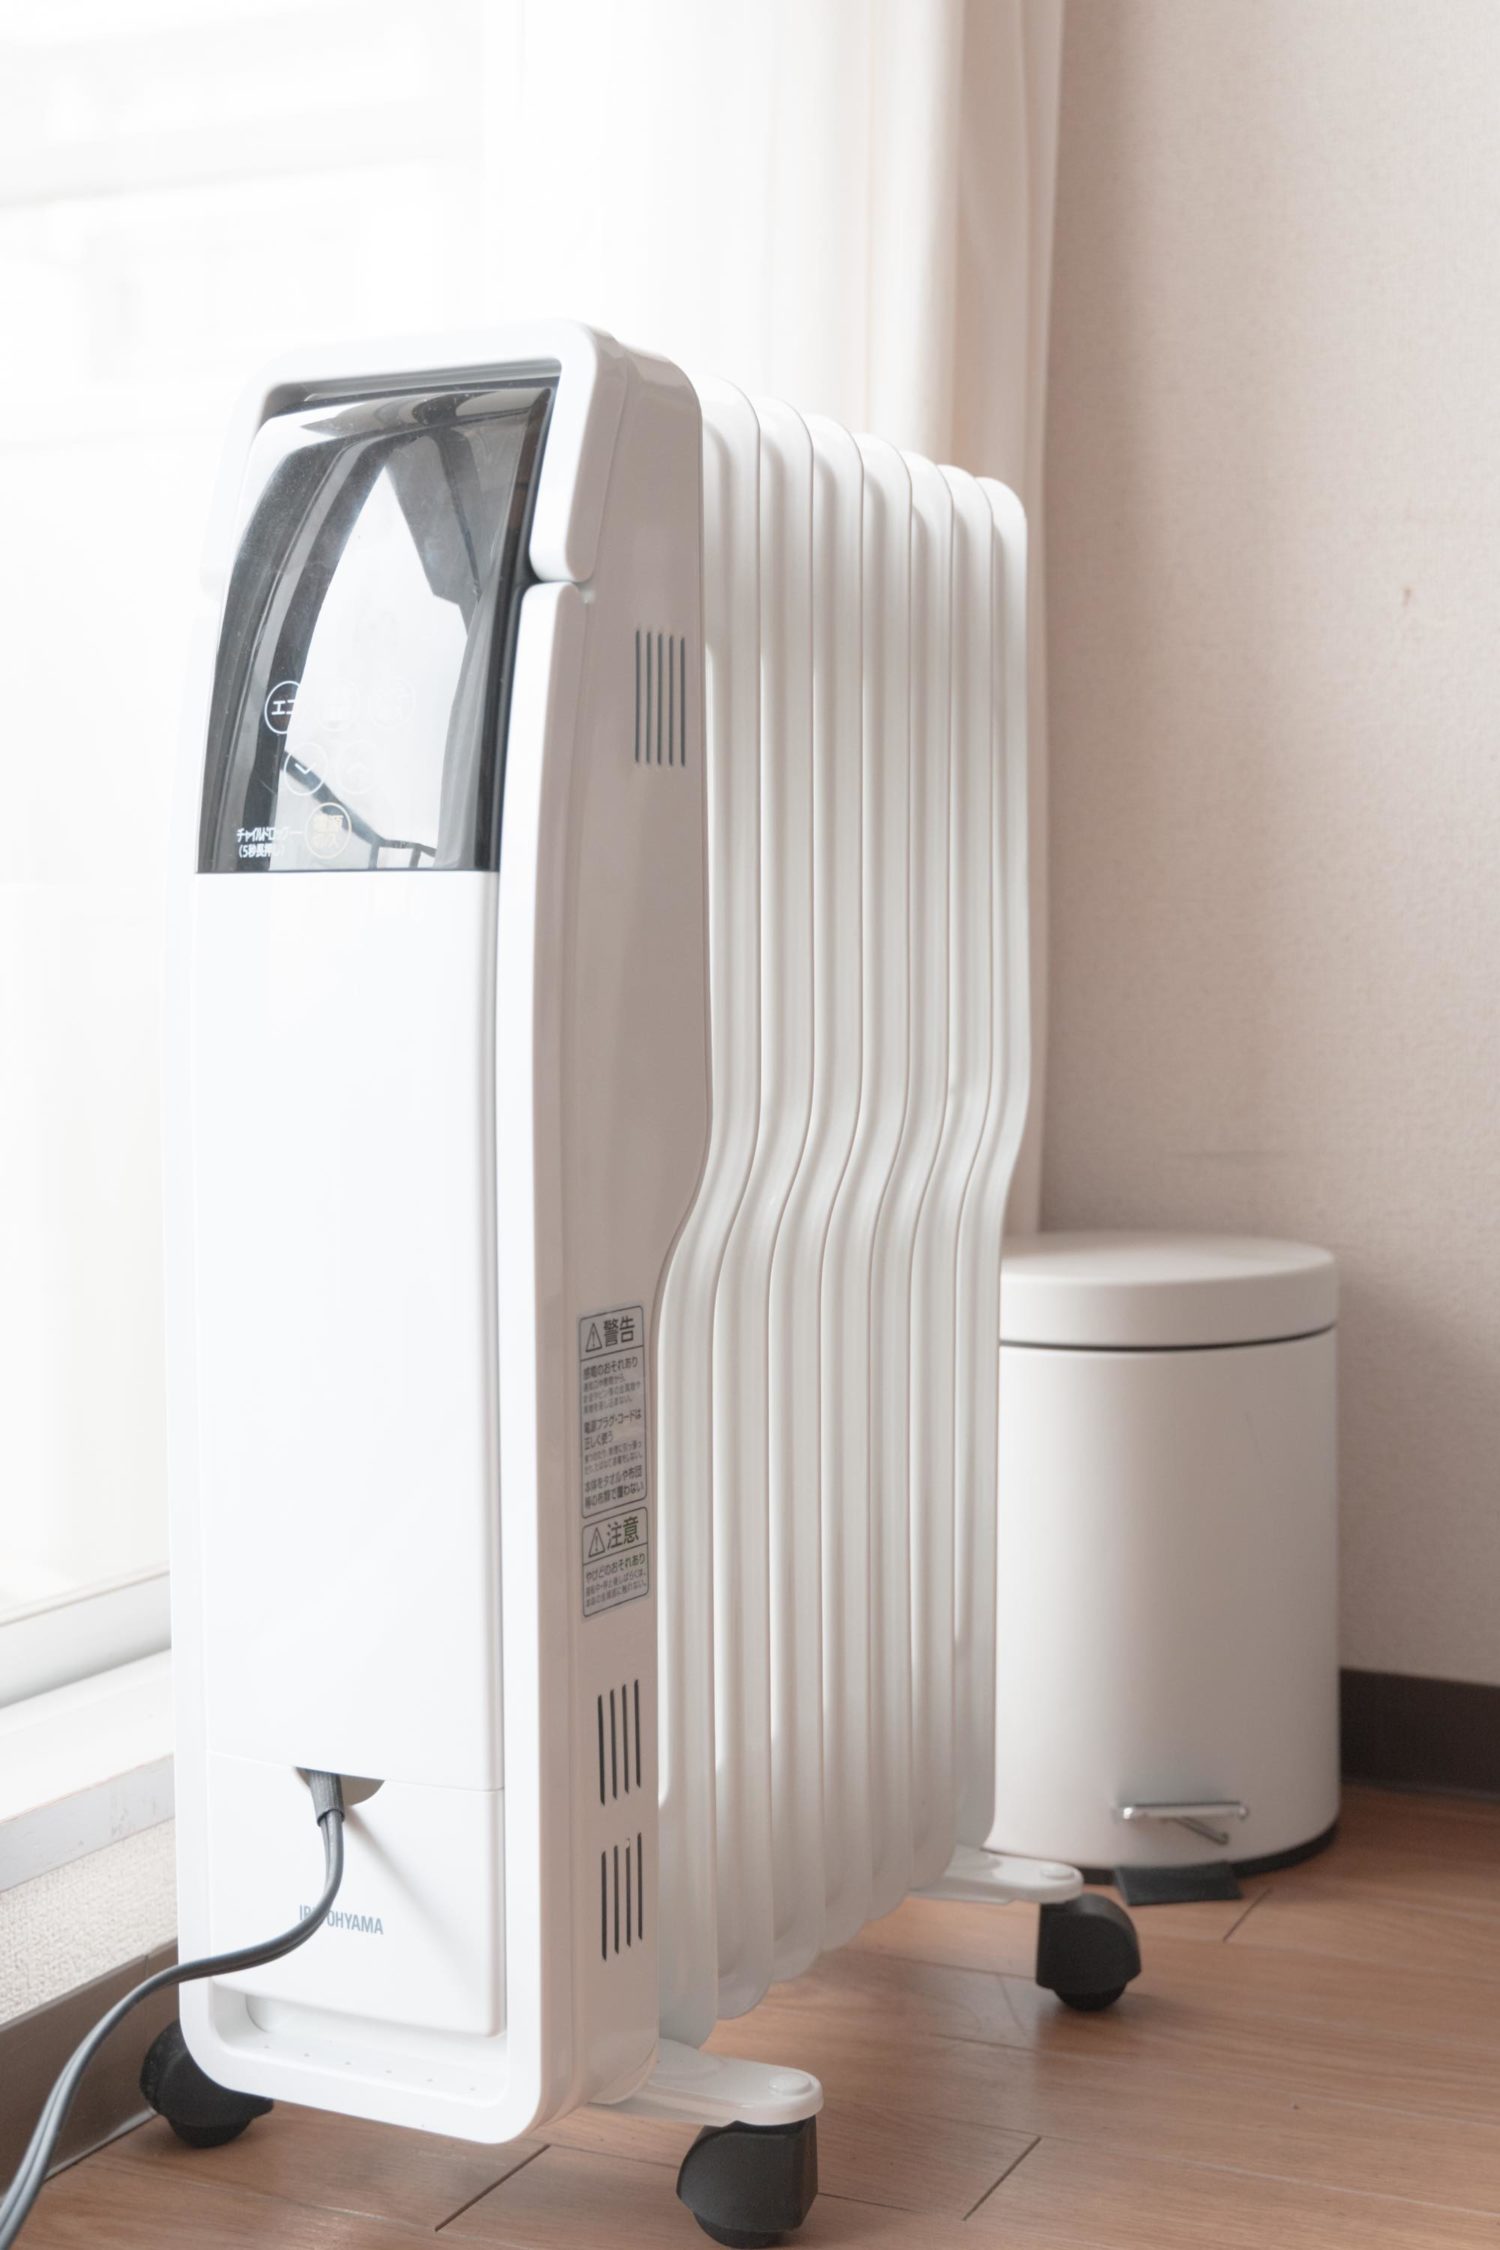 冷暖房/空調 オイルヒーター 部屋が自然に暖まる快適さ。アイリスオーヤマの1万円で買えるオイル 